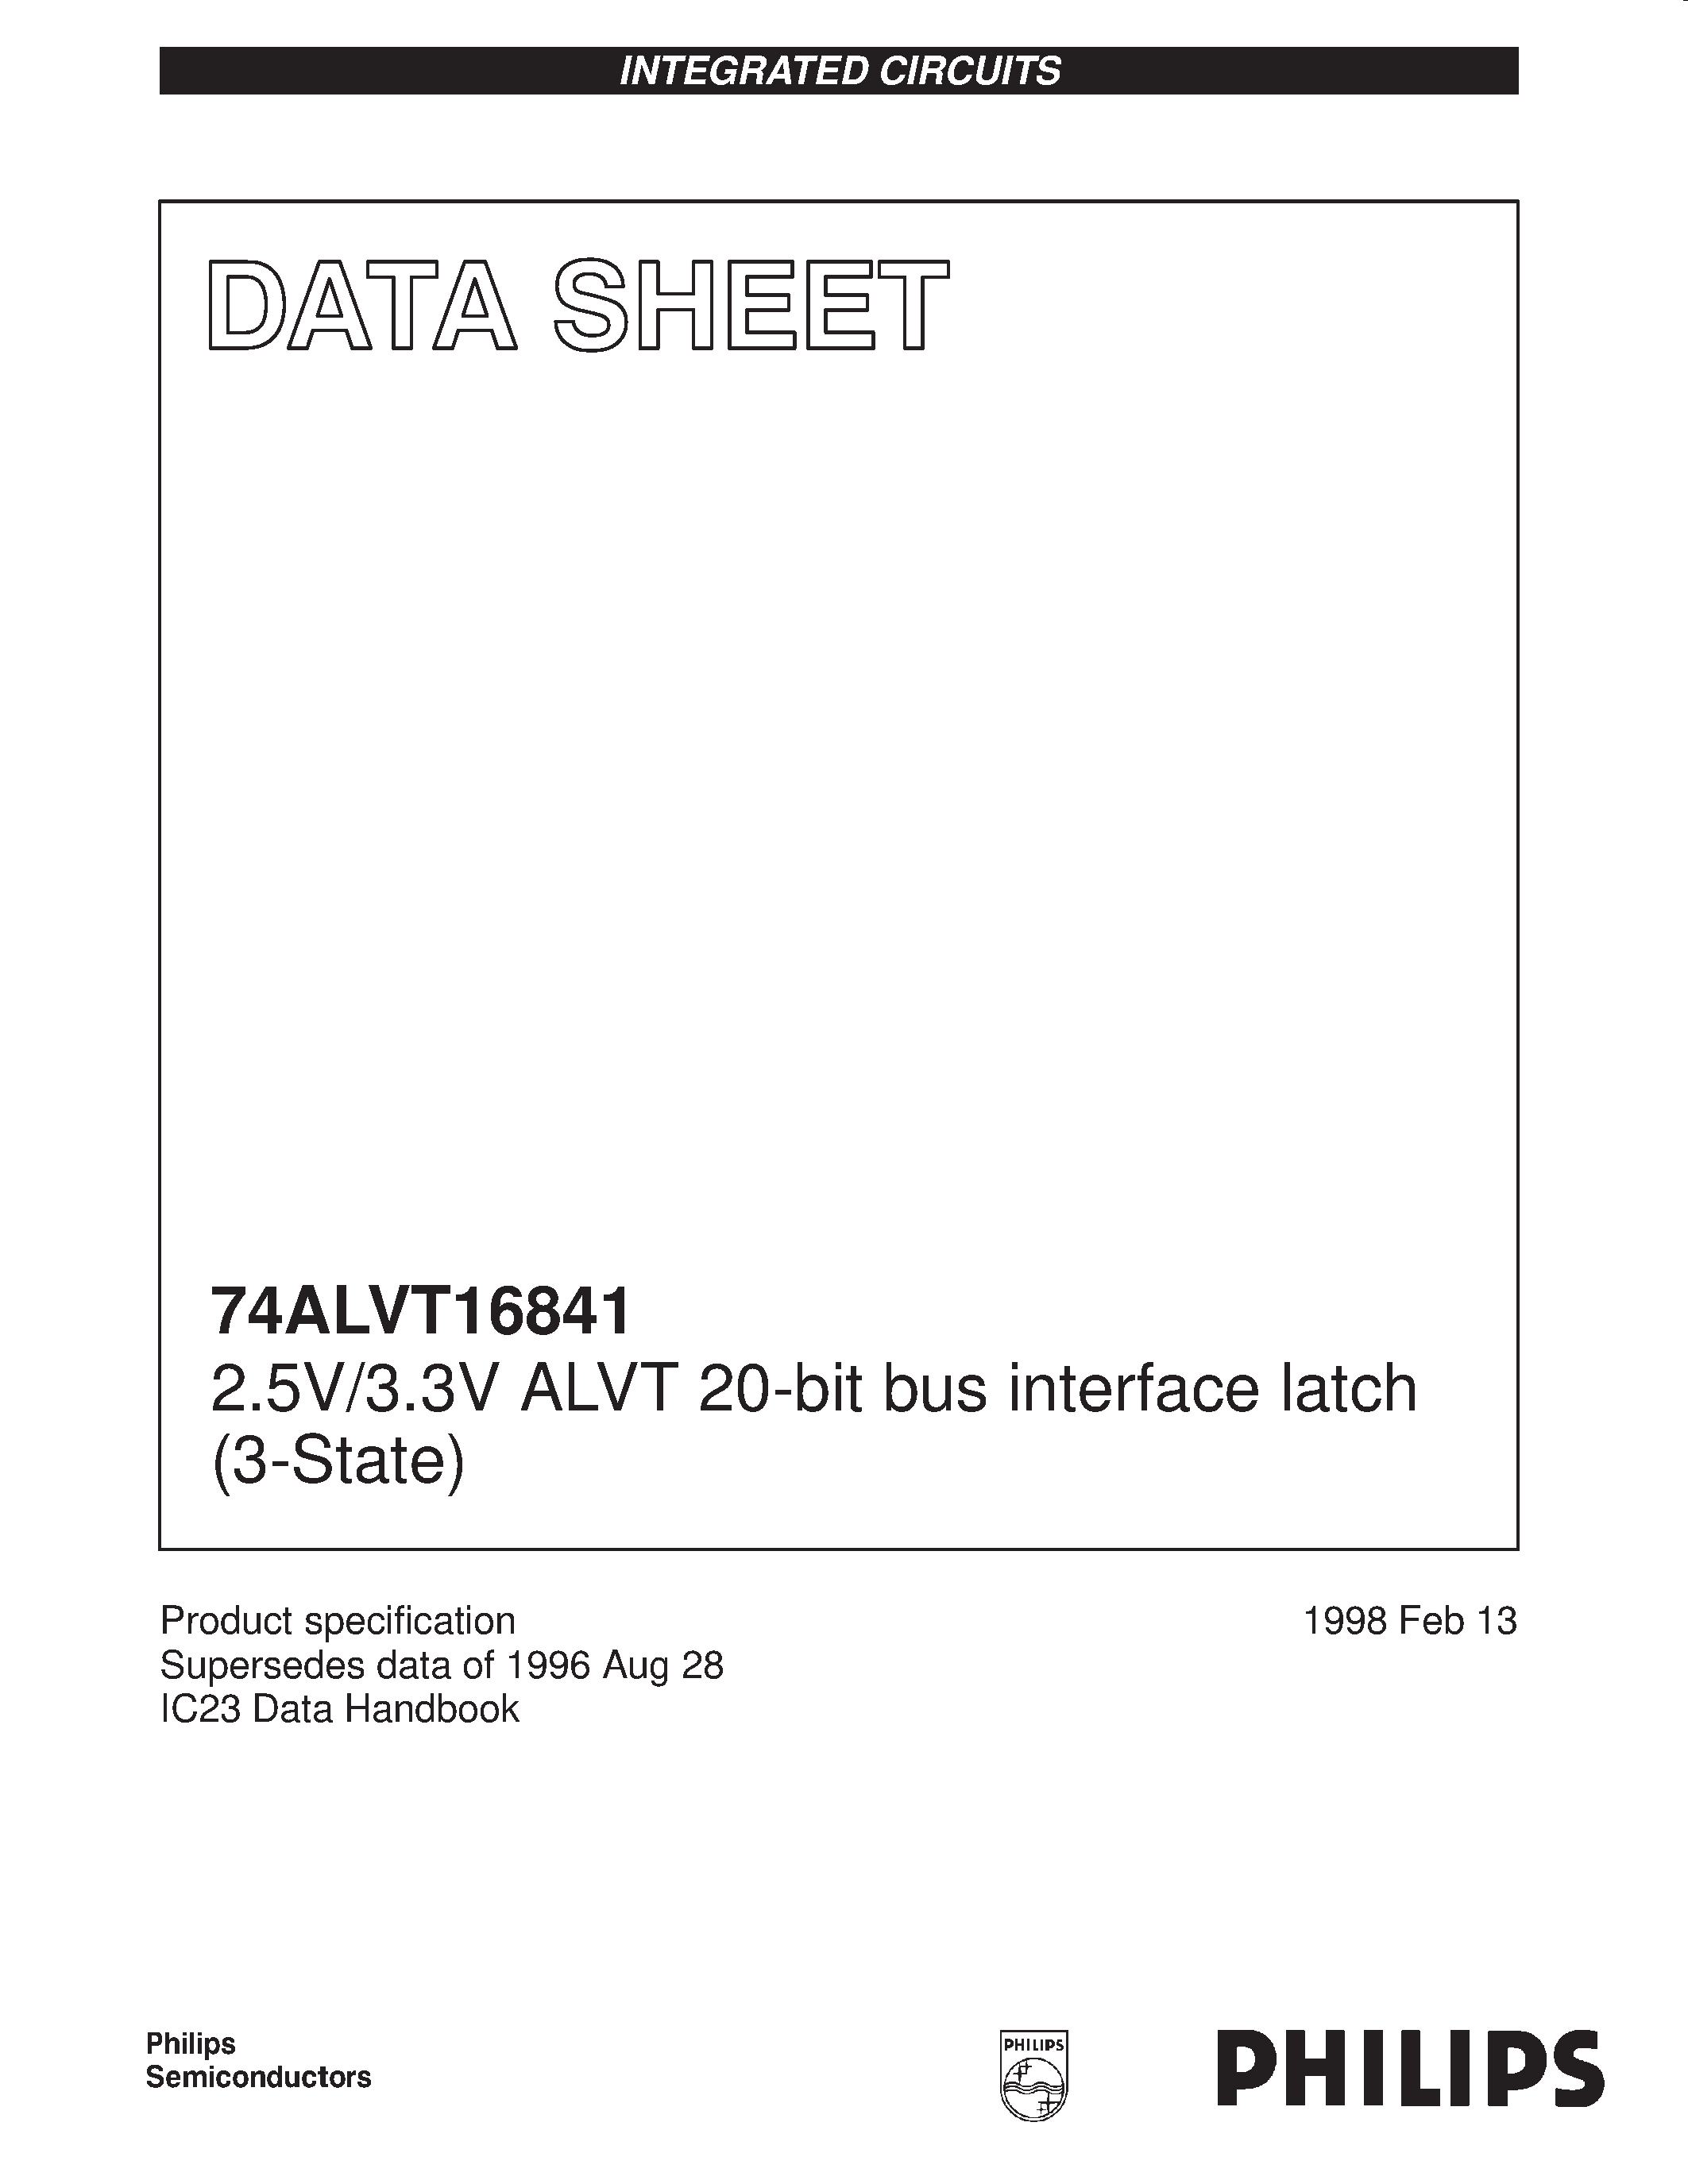 Datasheet 74ALVT16841DGG - 2.5V/3.3V ALVT 20-bit bus interface latch 3-State page 1